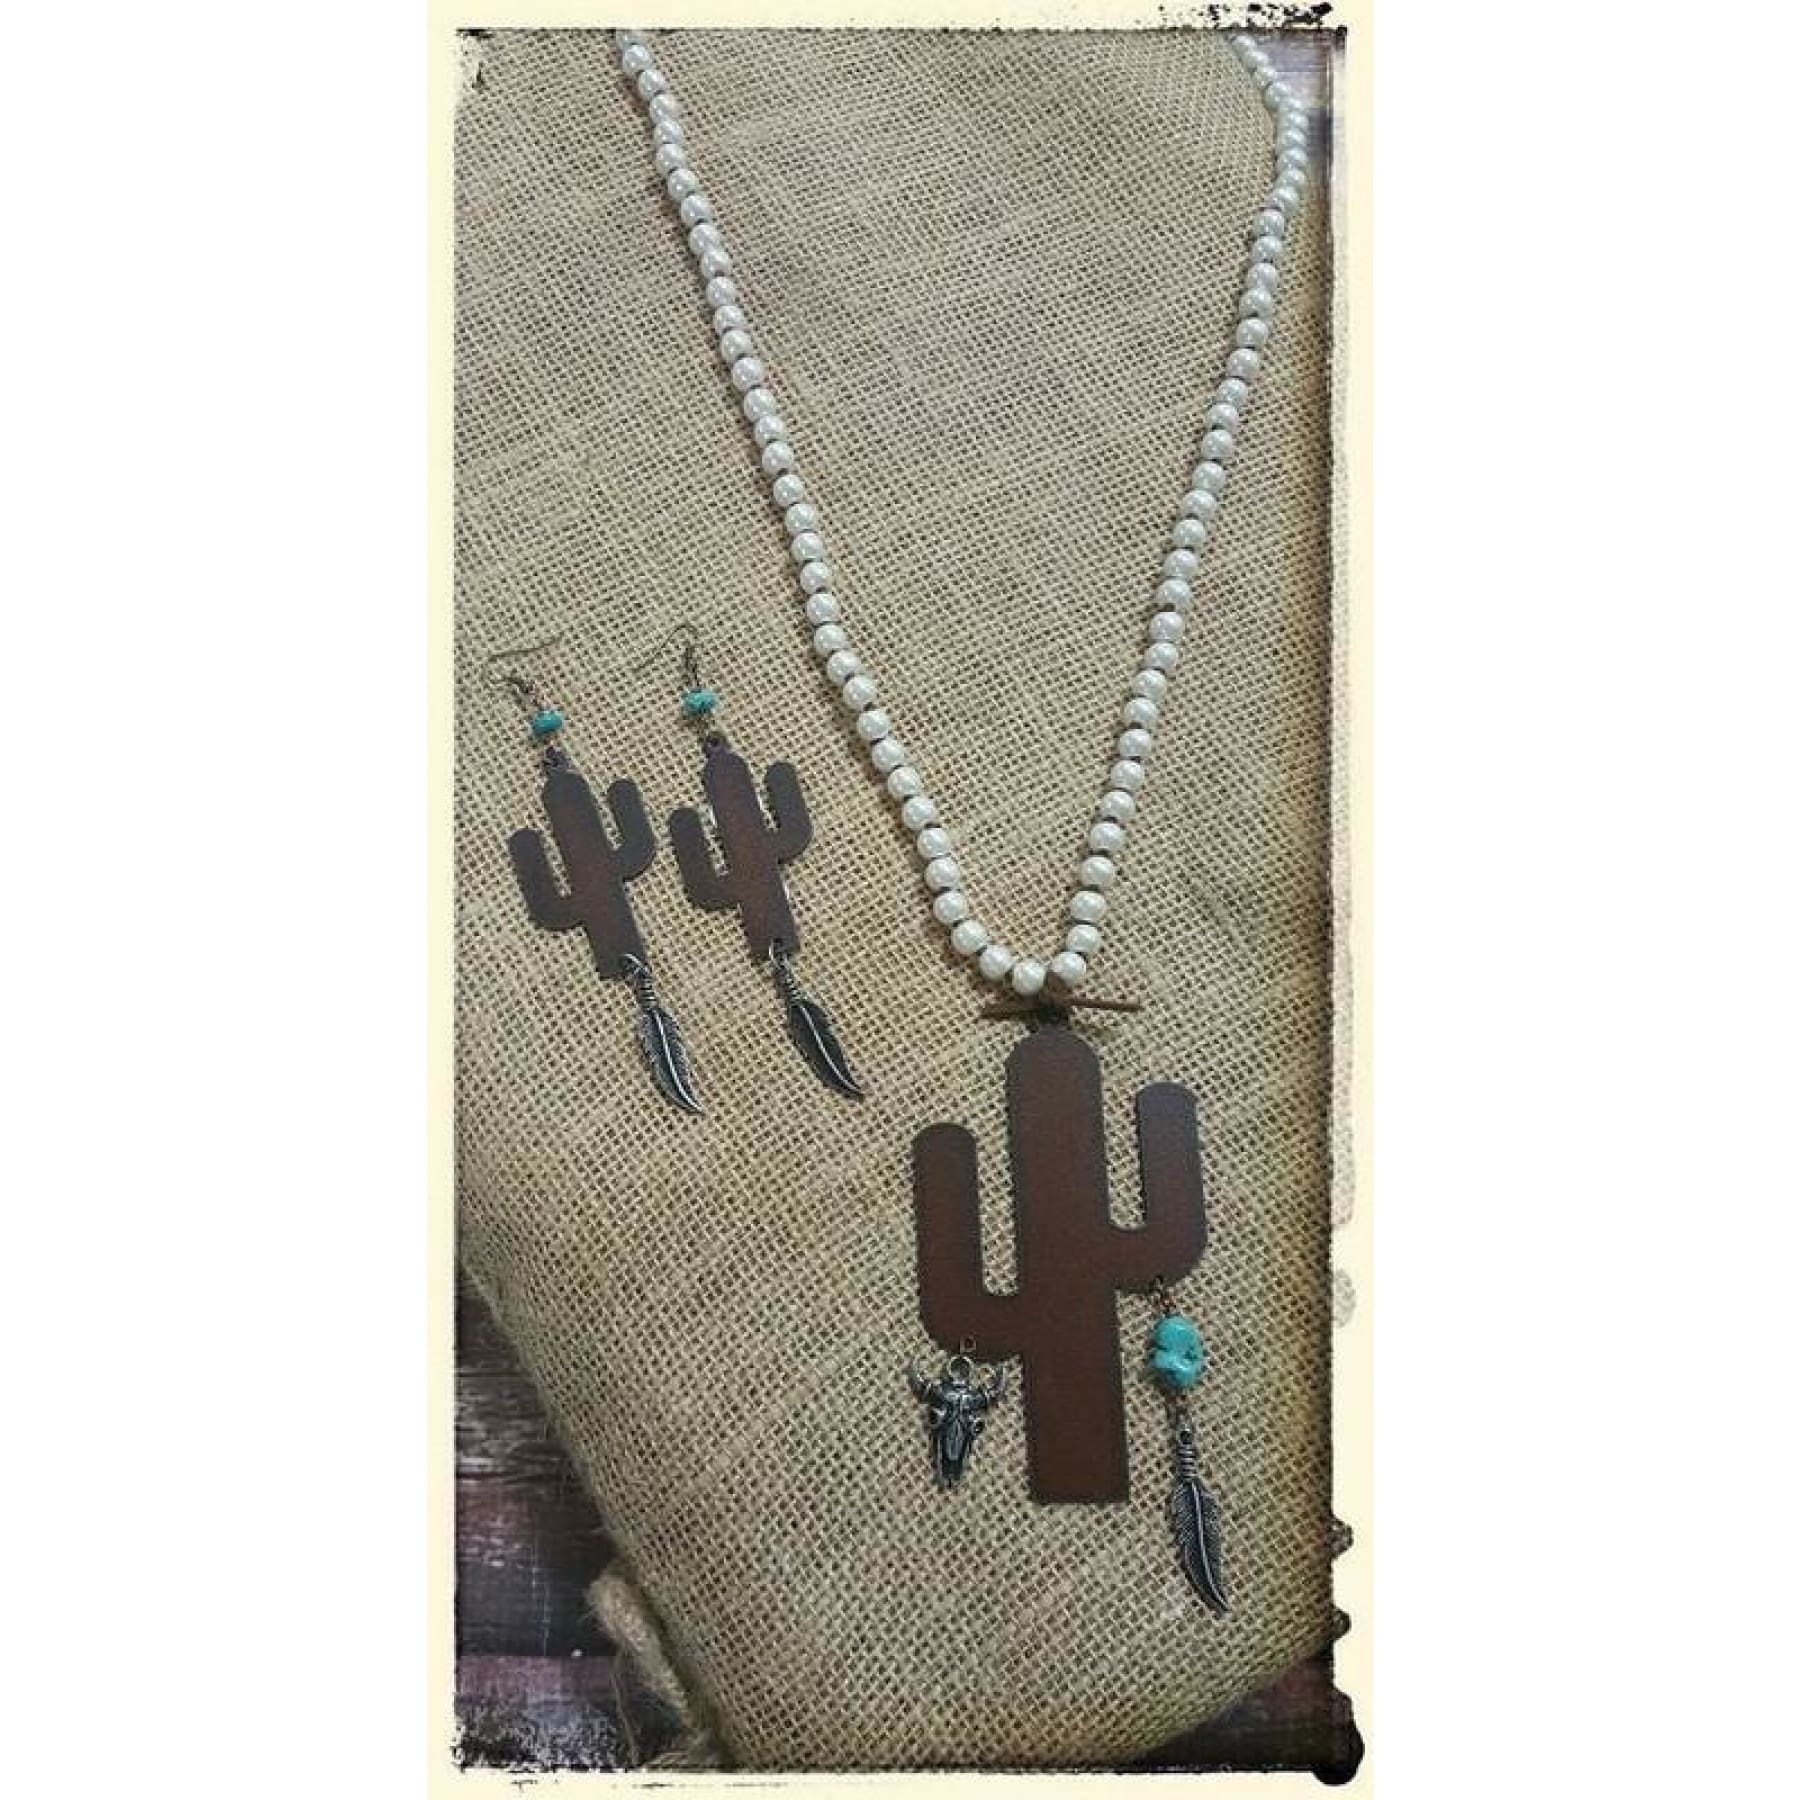 Pearl Necklace With Cactus Charm,Necklace - Dirt Road Divas Boutique